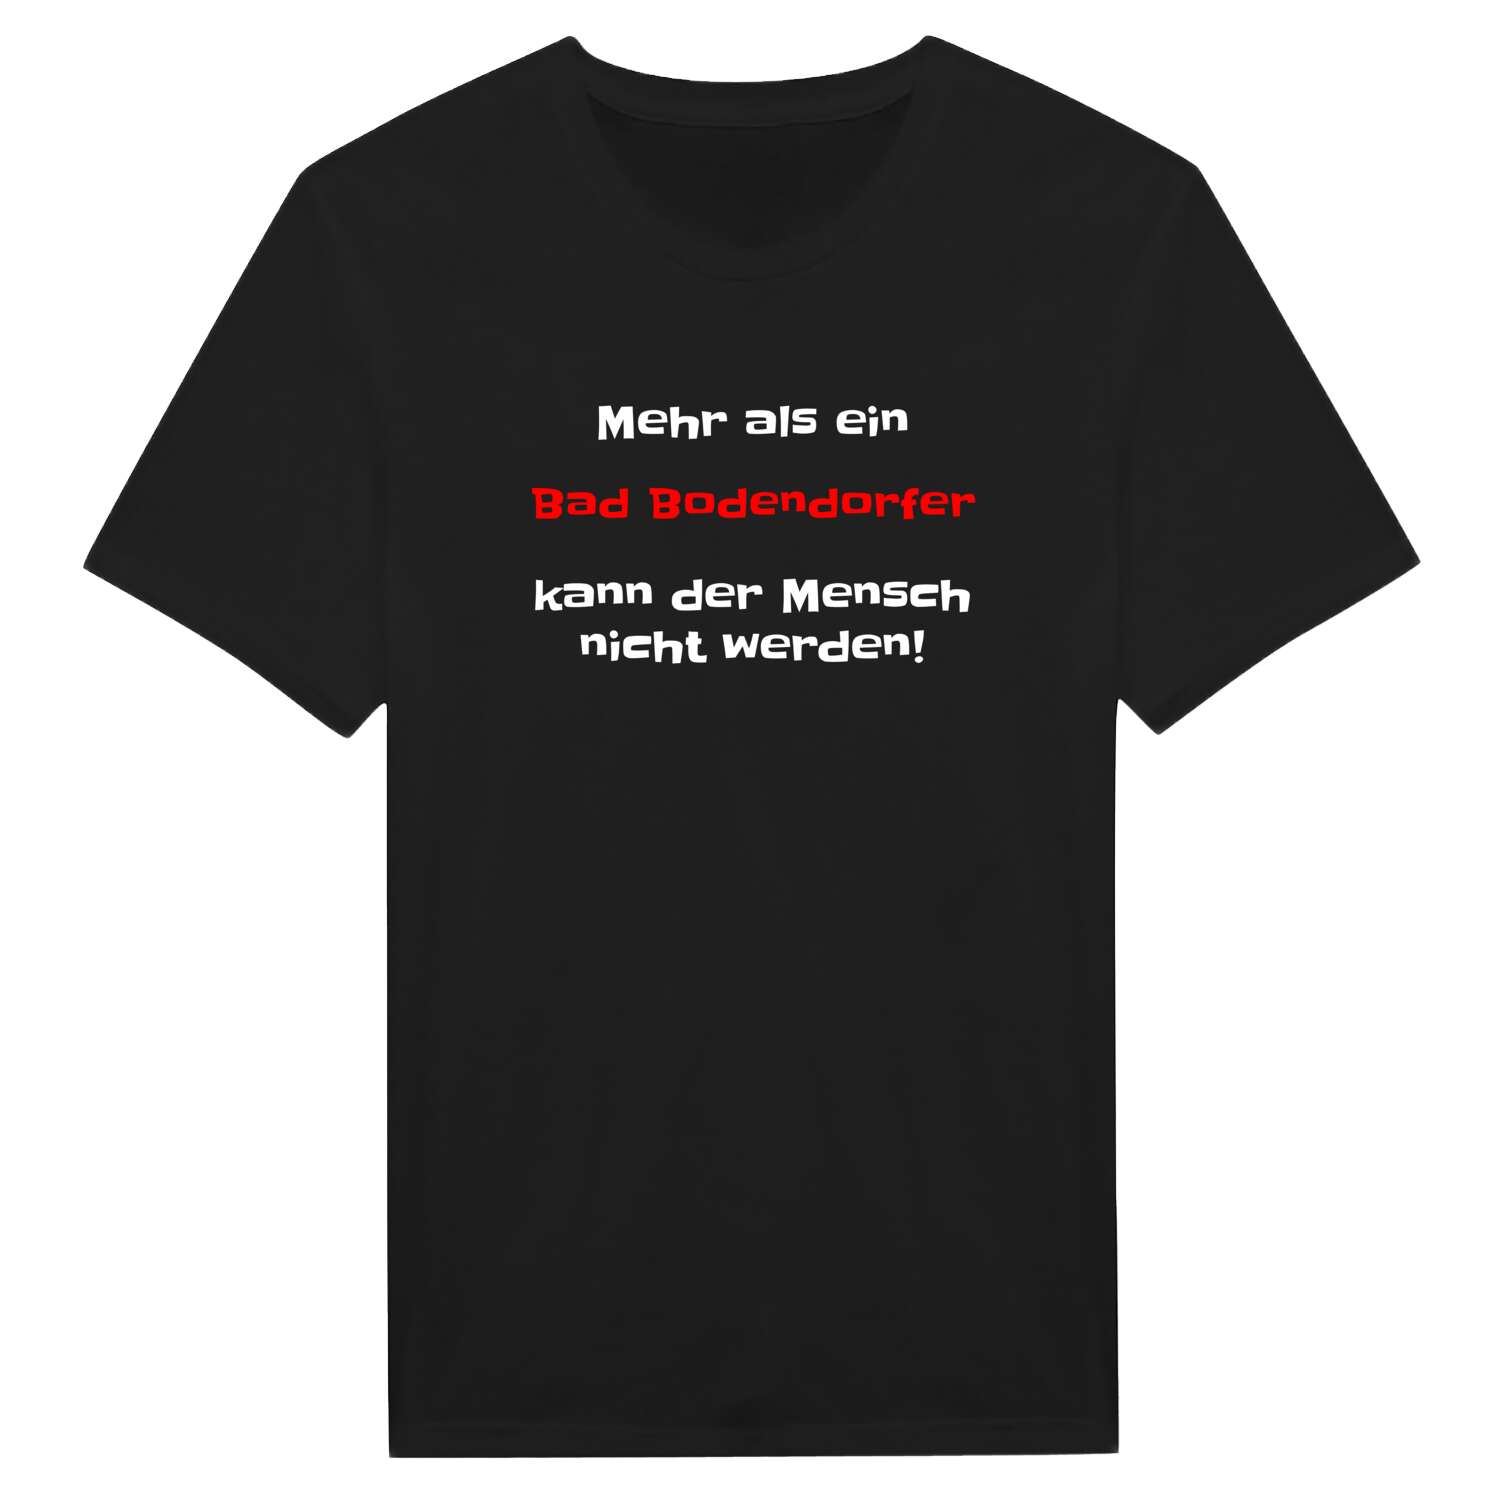 Bad Bodendorf T-Shirt »Mehr als ein«